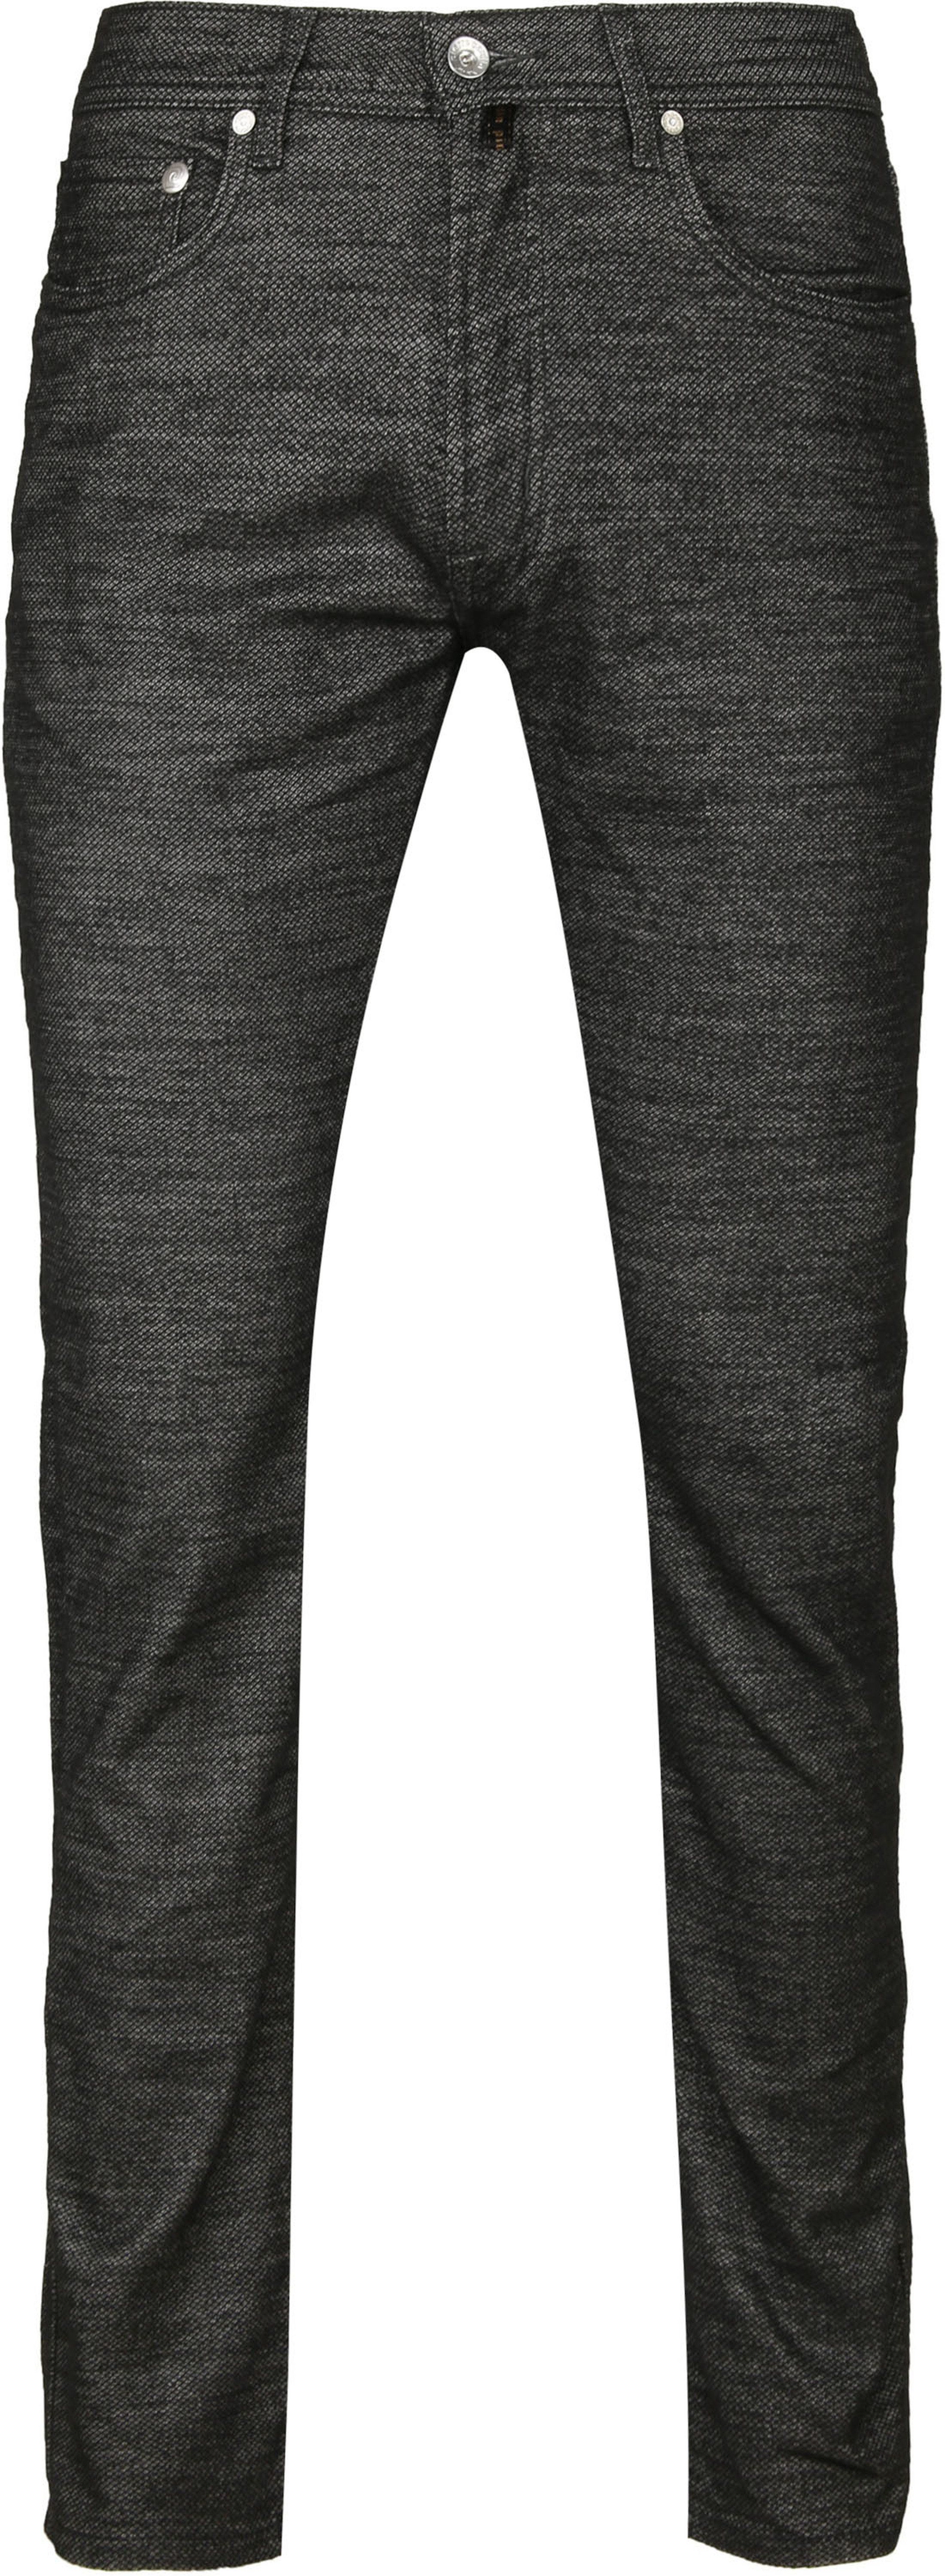 Pierre Cardin Pantalon Lyon Multicoloré Noir taille W 32